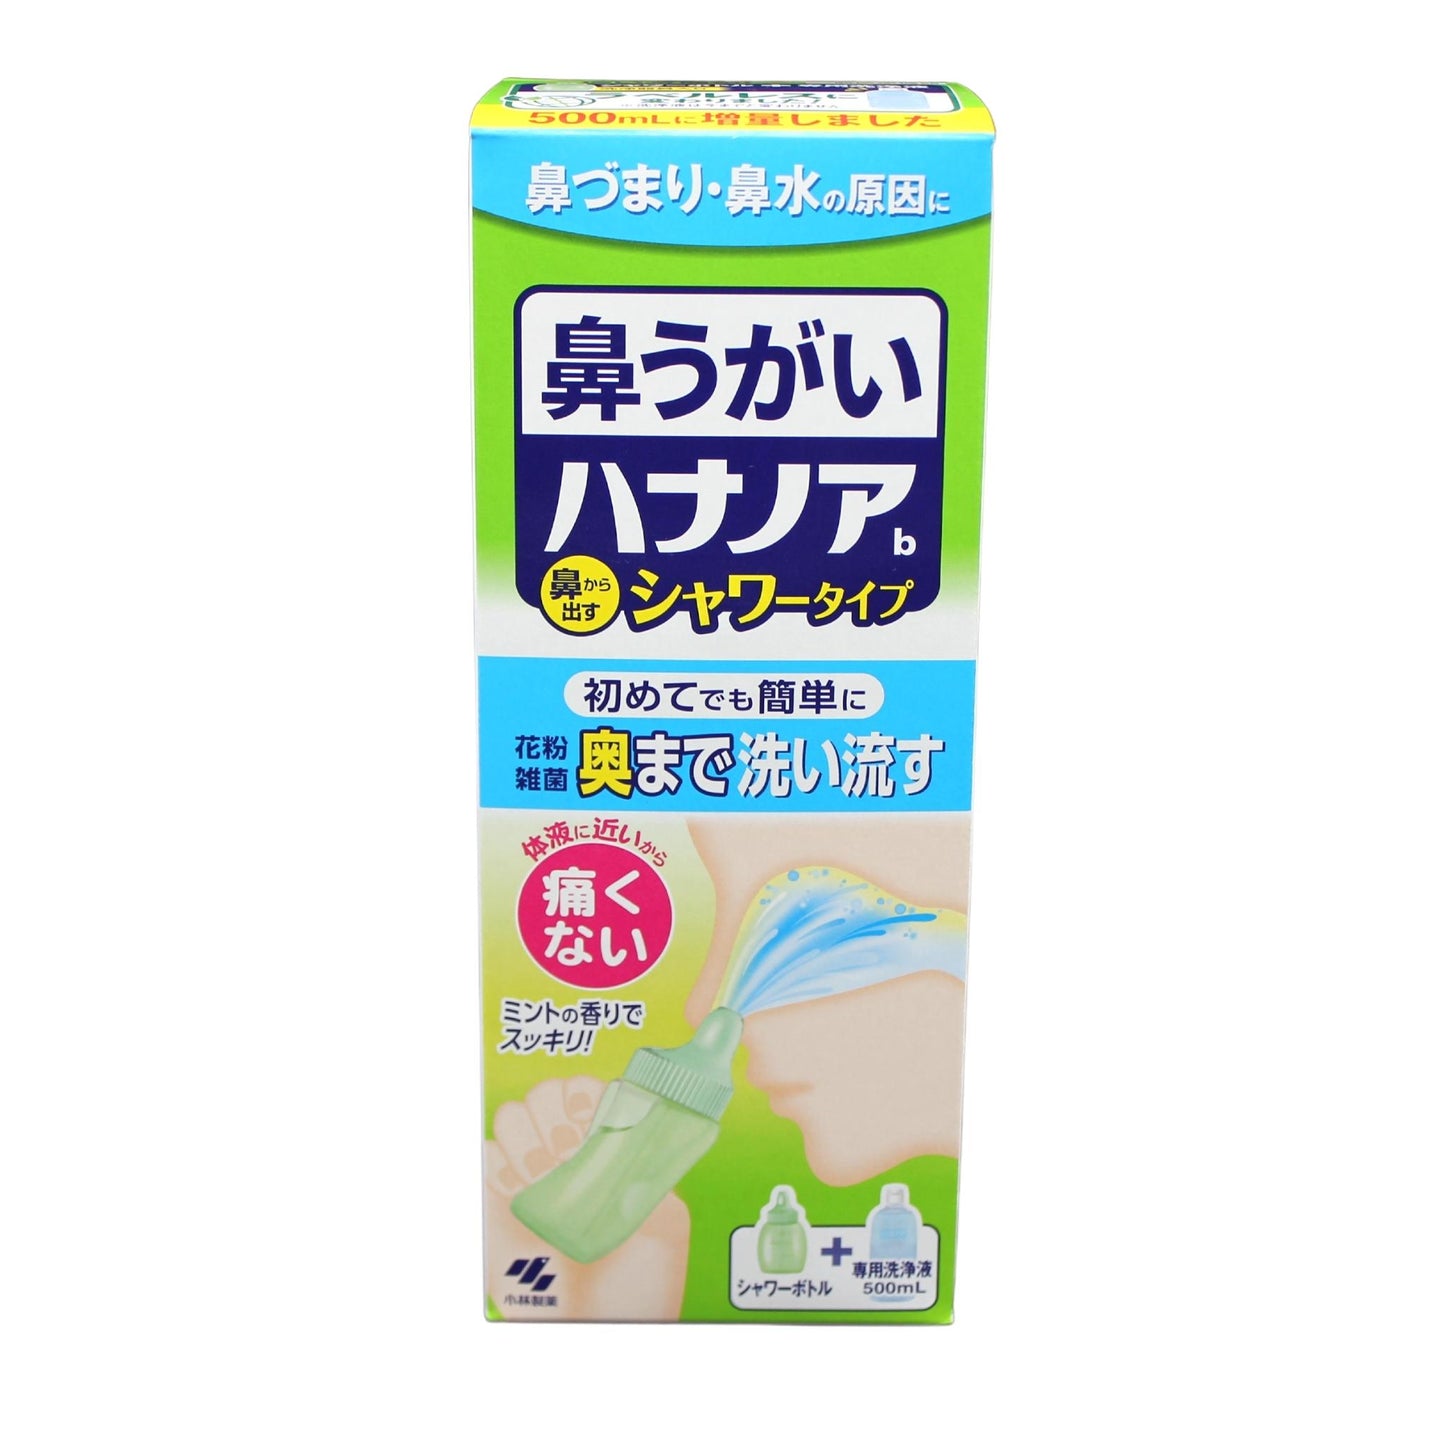 【小林製藥】Hananoa 沖洗清潔型(從鼻出) 薄荷 500ml